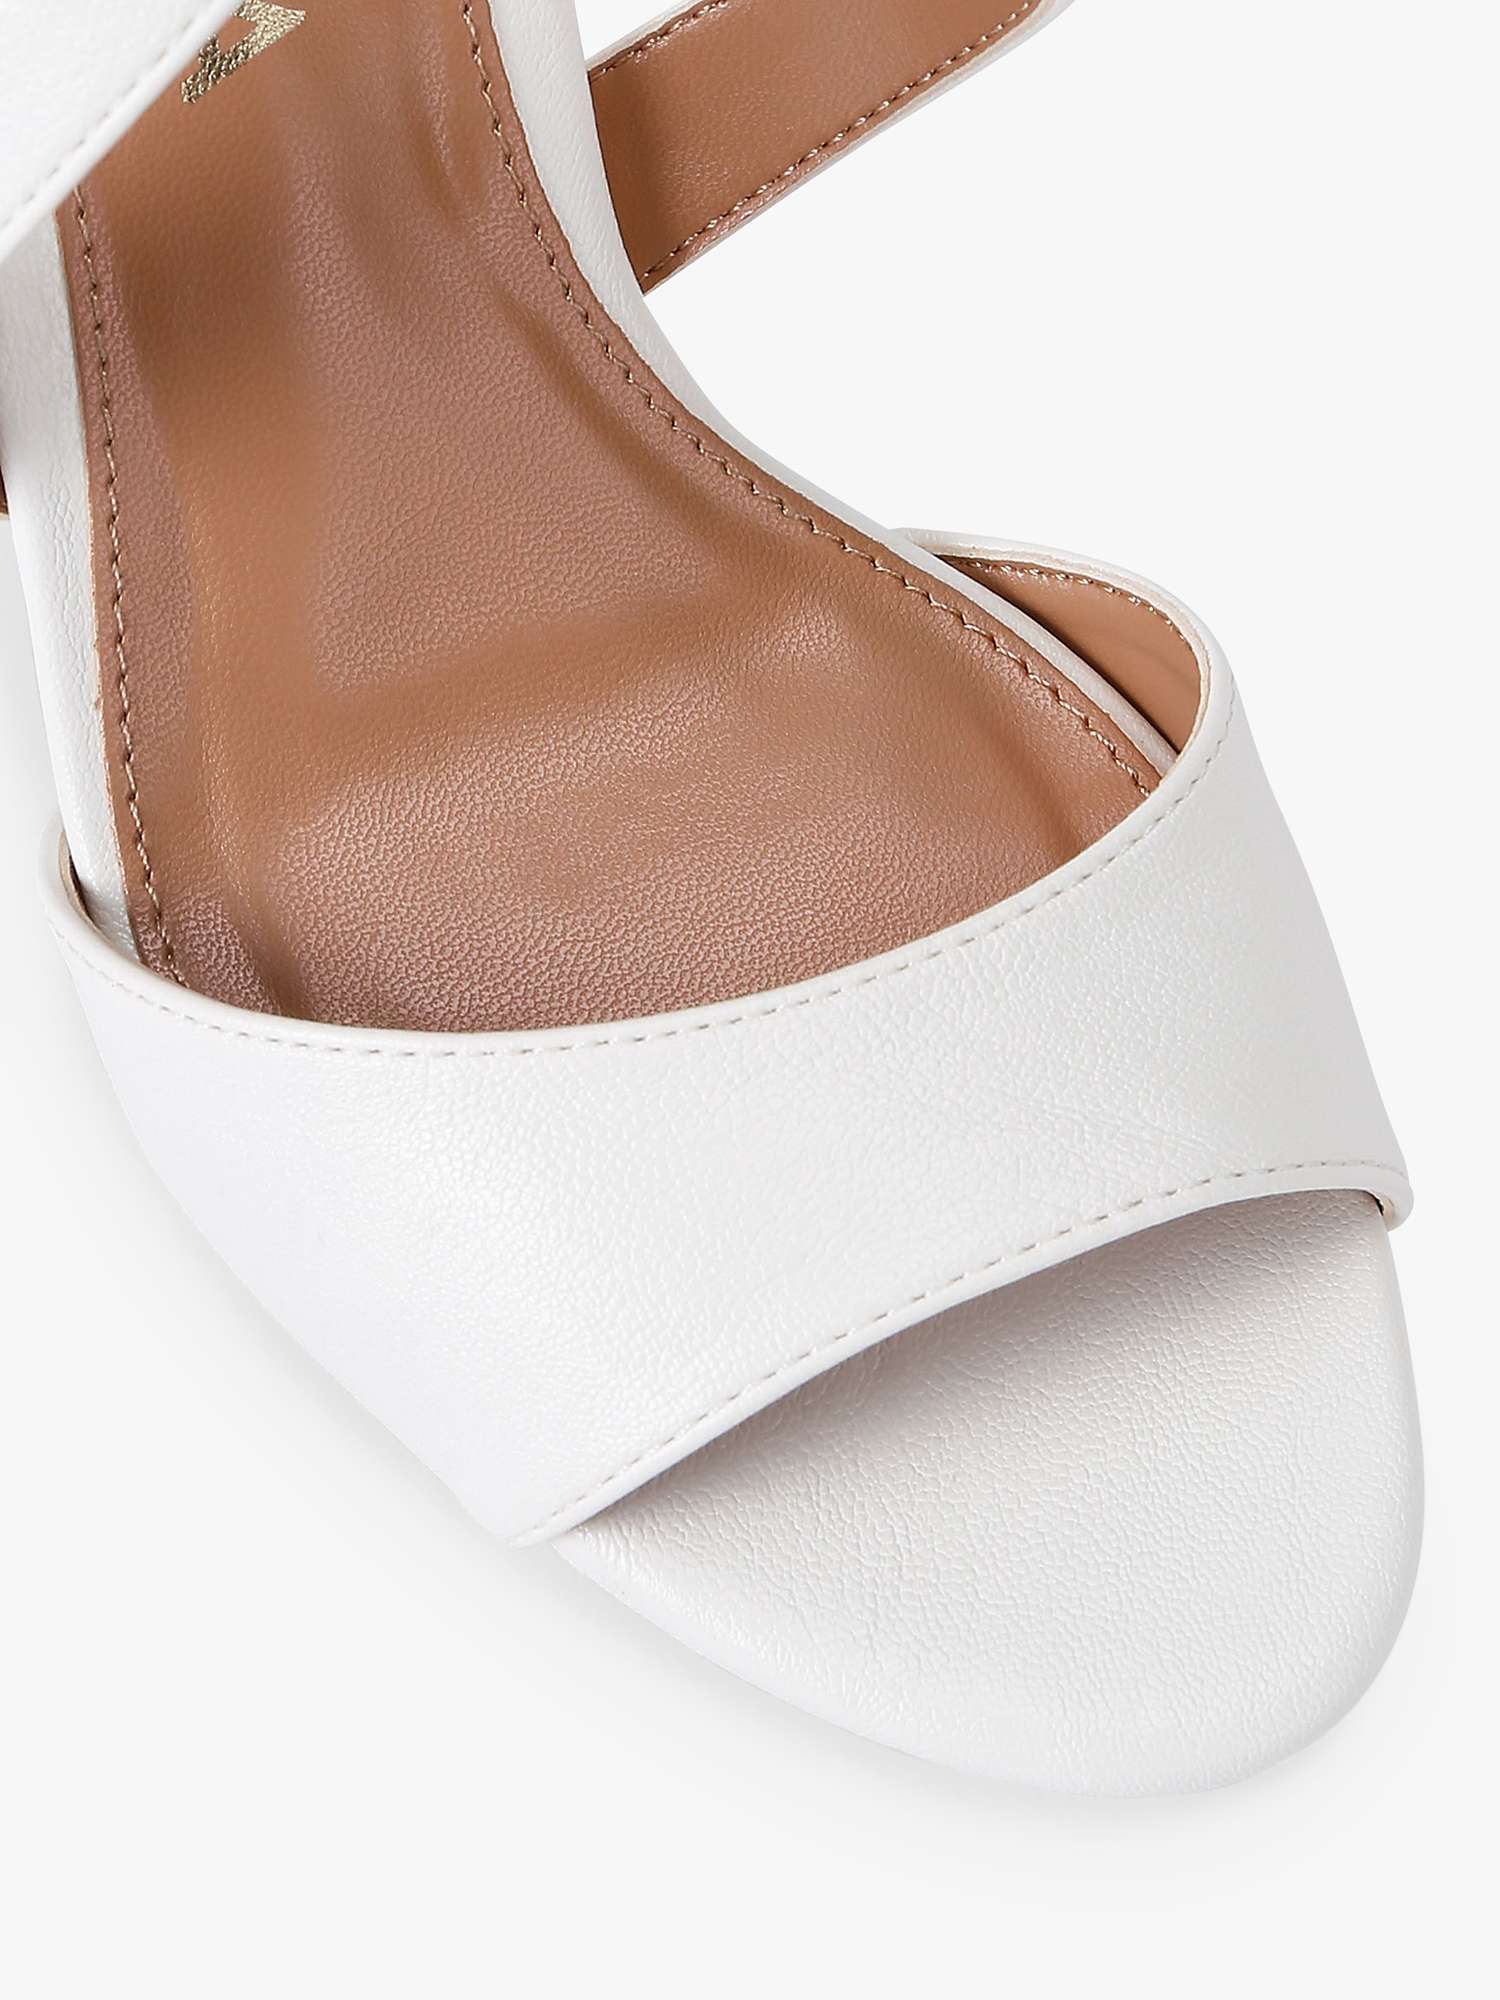 Buy Carvela Kross Stiletto Heel Sandals, White Online at johnlewis.com